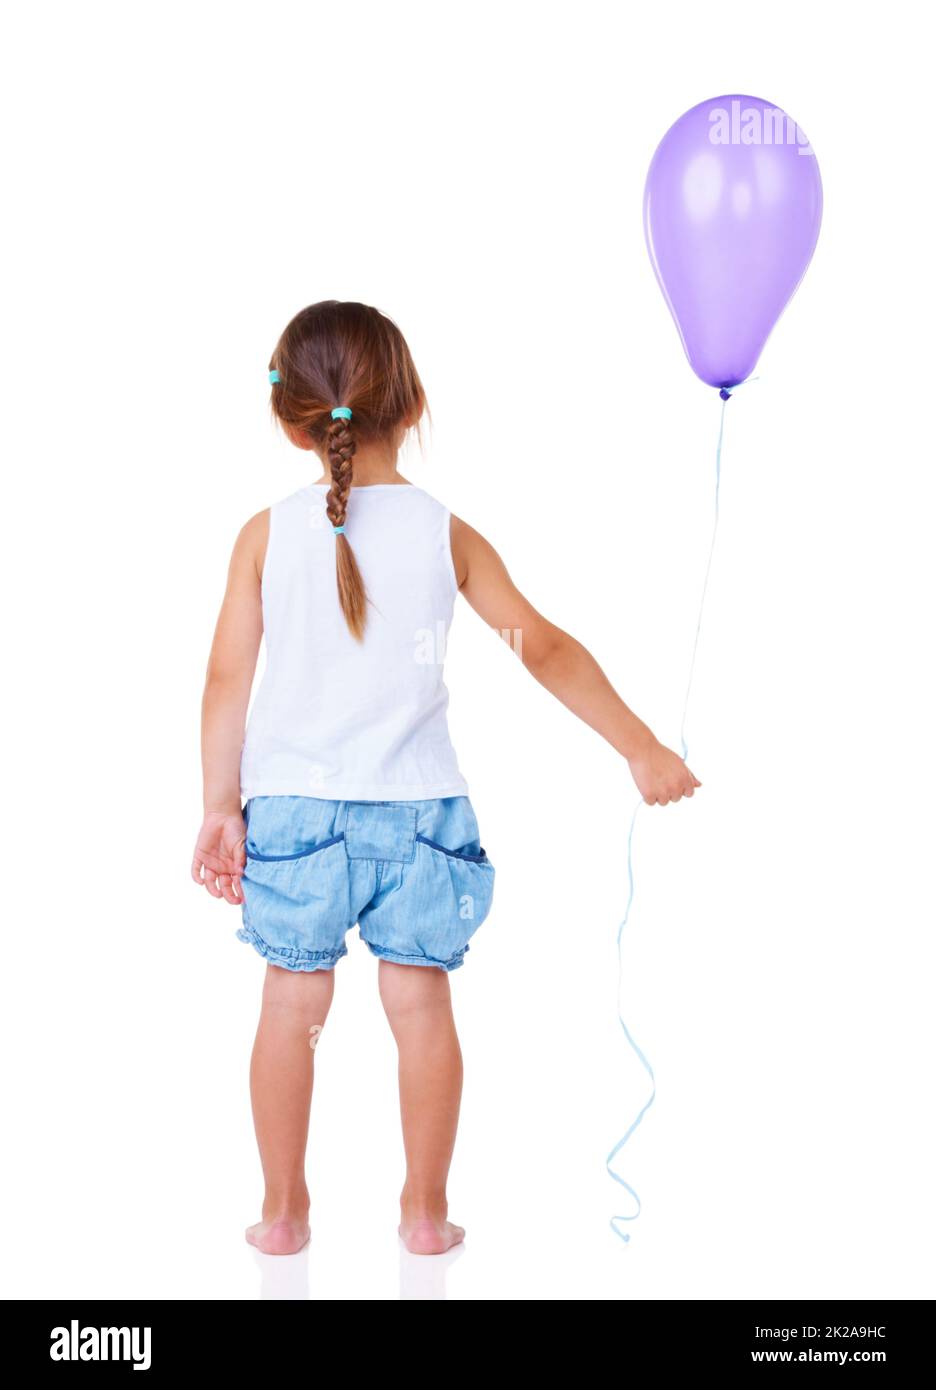 Dejando una fiesta de cumpleaños. Vista trasera completa de una niña sosteniendo un globo. Foto de stock